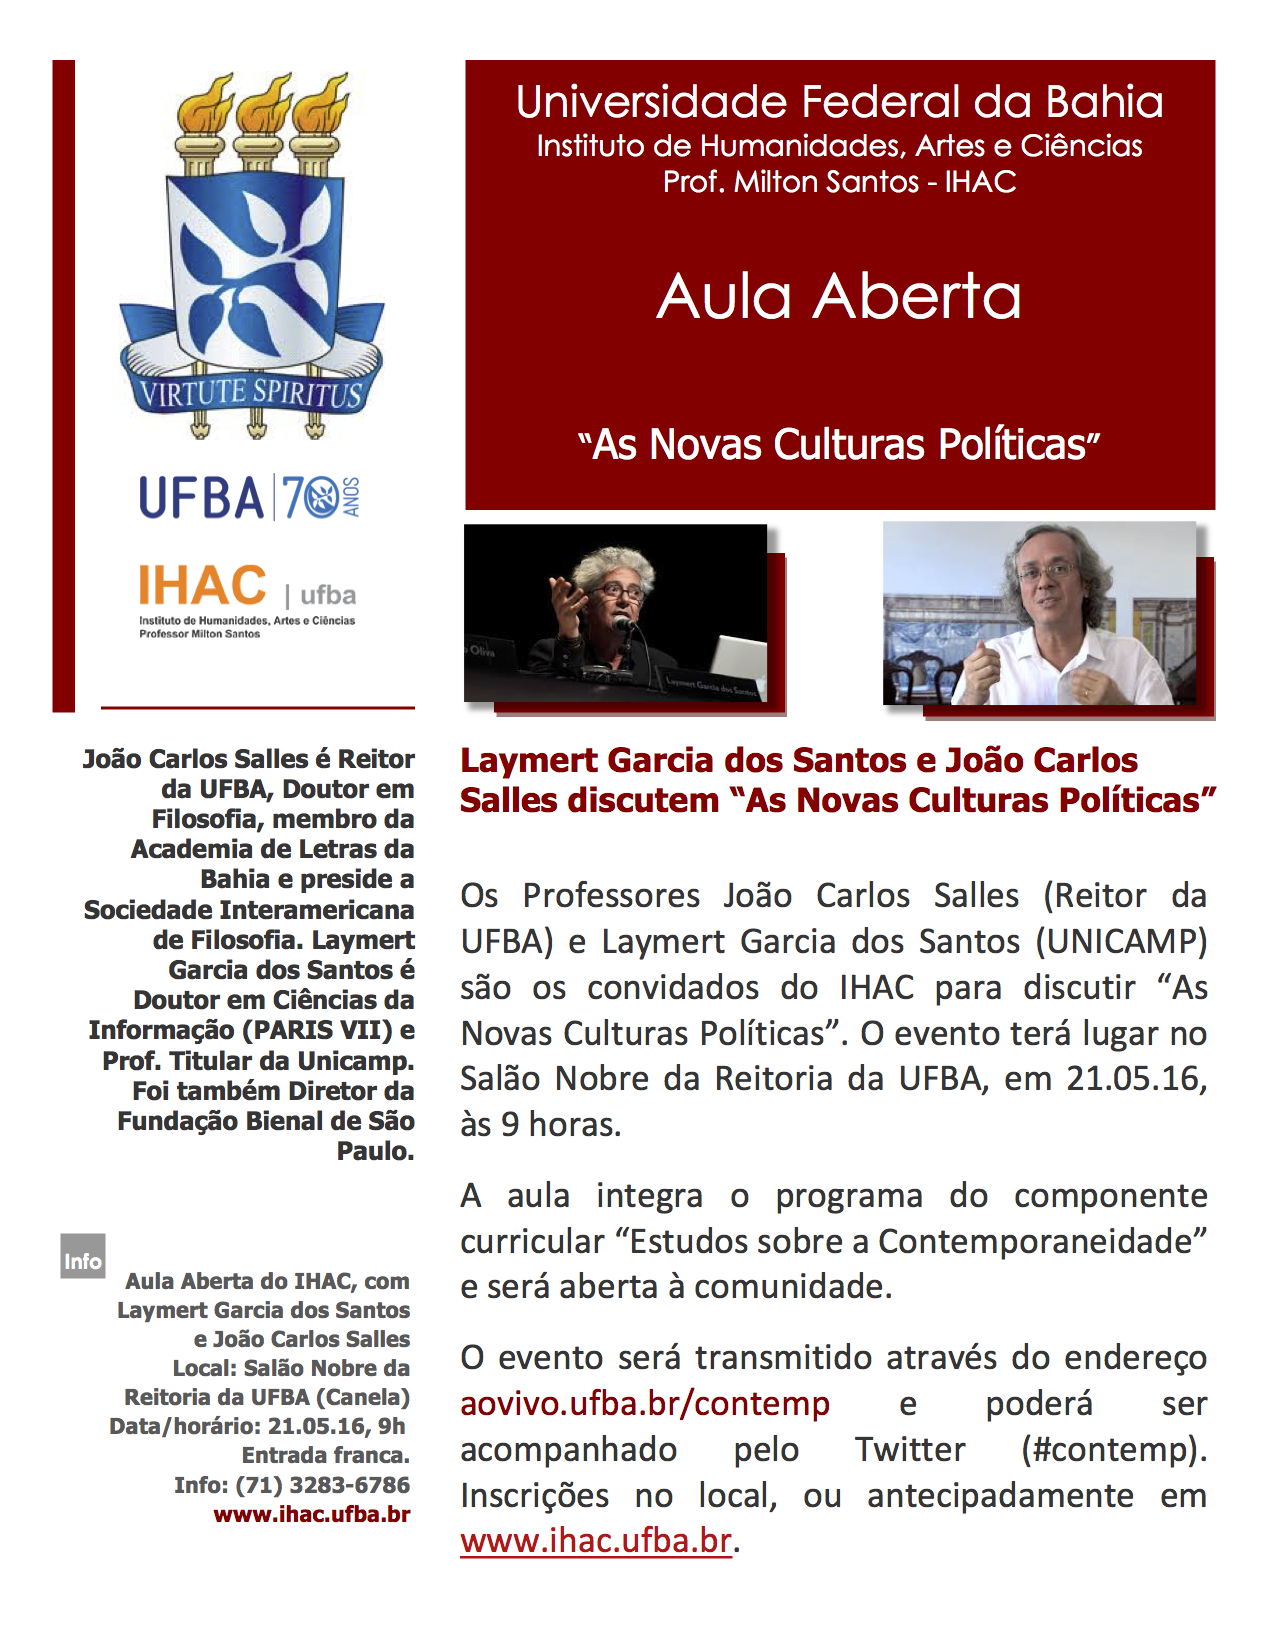 Aula Aberta com Laymert Garcia dos Santos e João Carlos Salles discute as novas culturas políticas